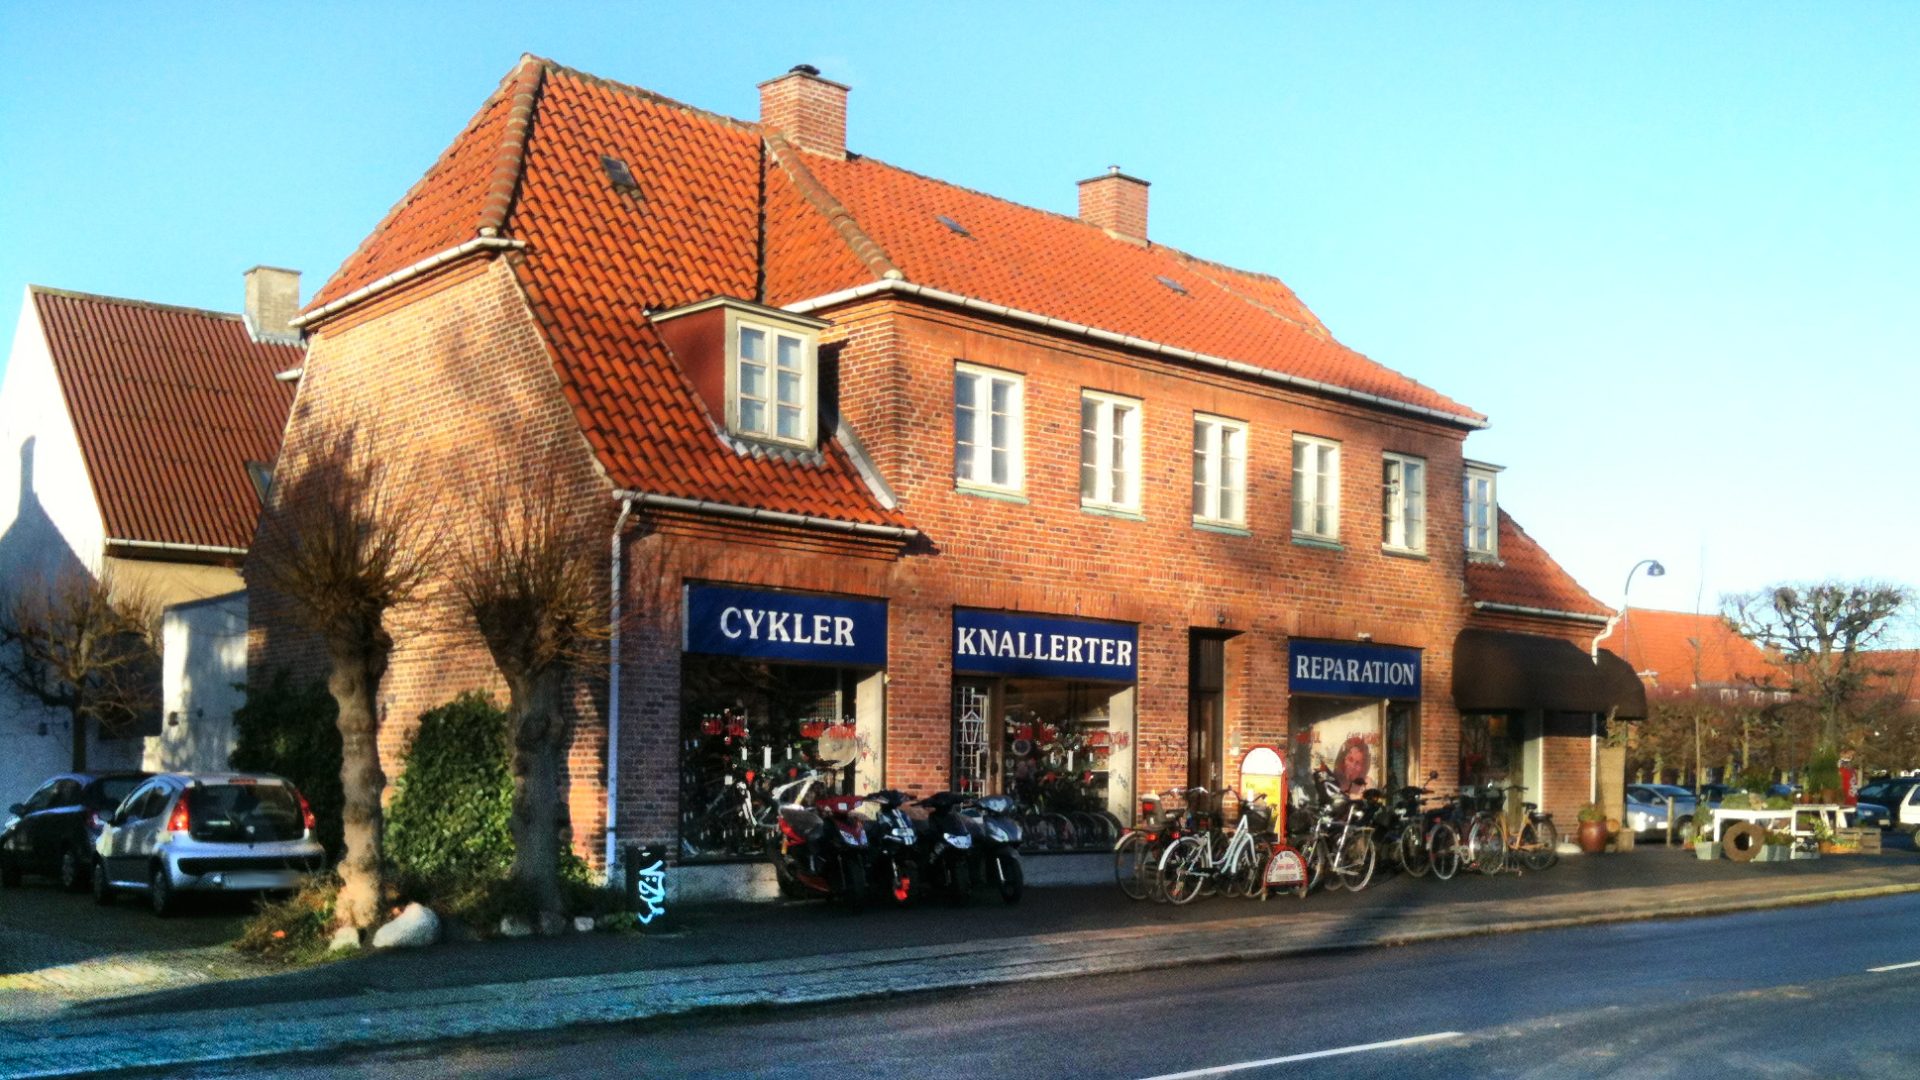 Sonnig-blauer Himmel, ein hübsches rotes Backsteingebäude mit drei Schaufenstern Cykler, Knallerter, Reparation, innen und außen alles voller Zweiräder mit und ohne Motor.